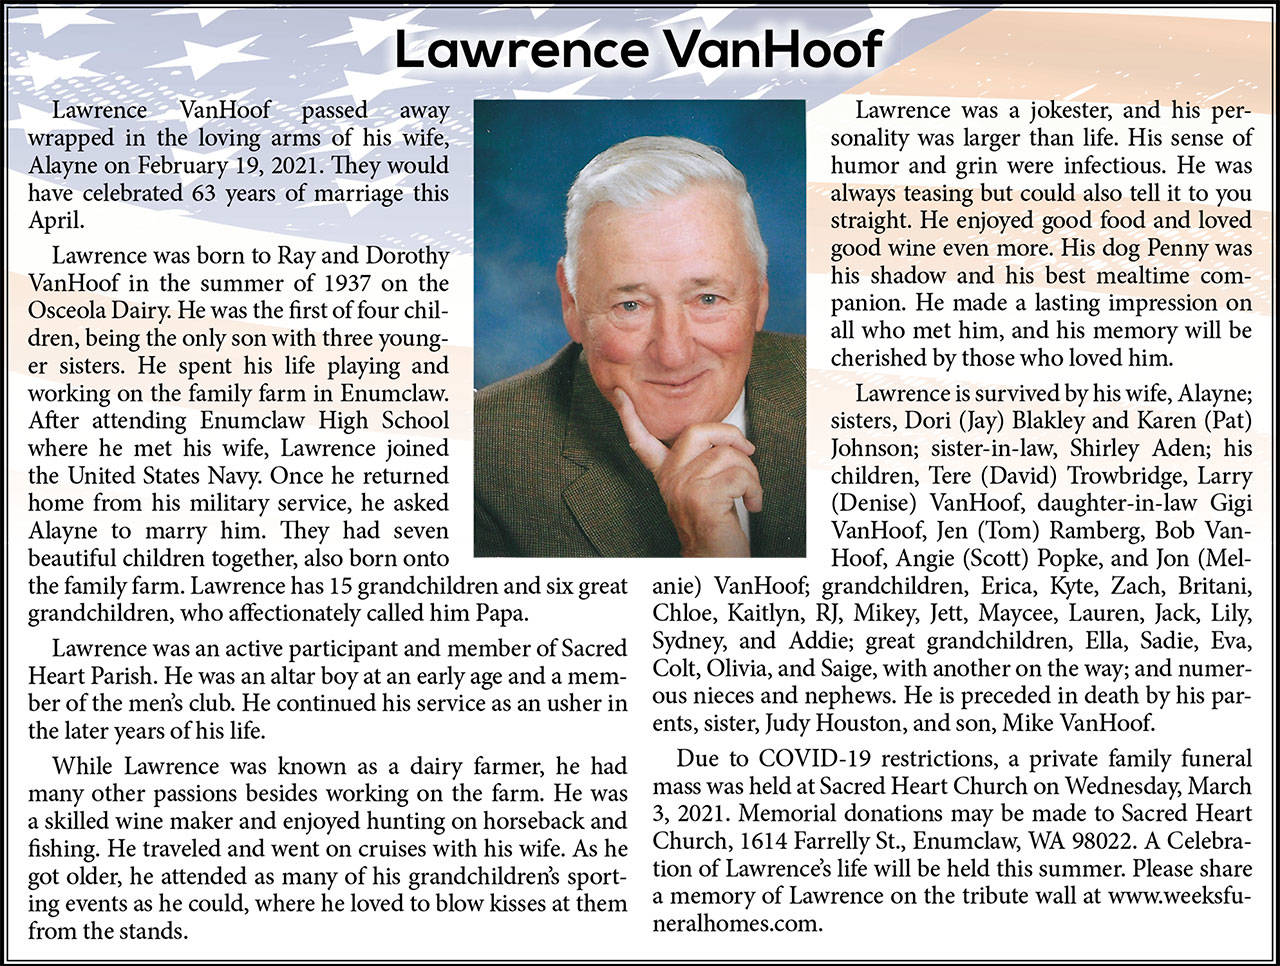 Lawrence VanHoof